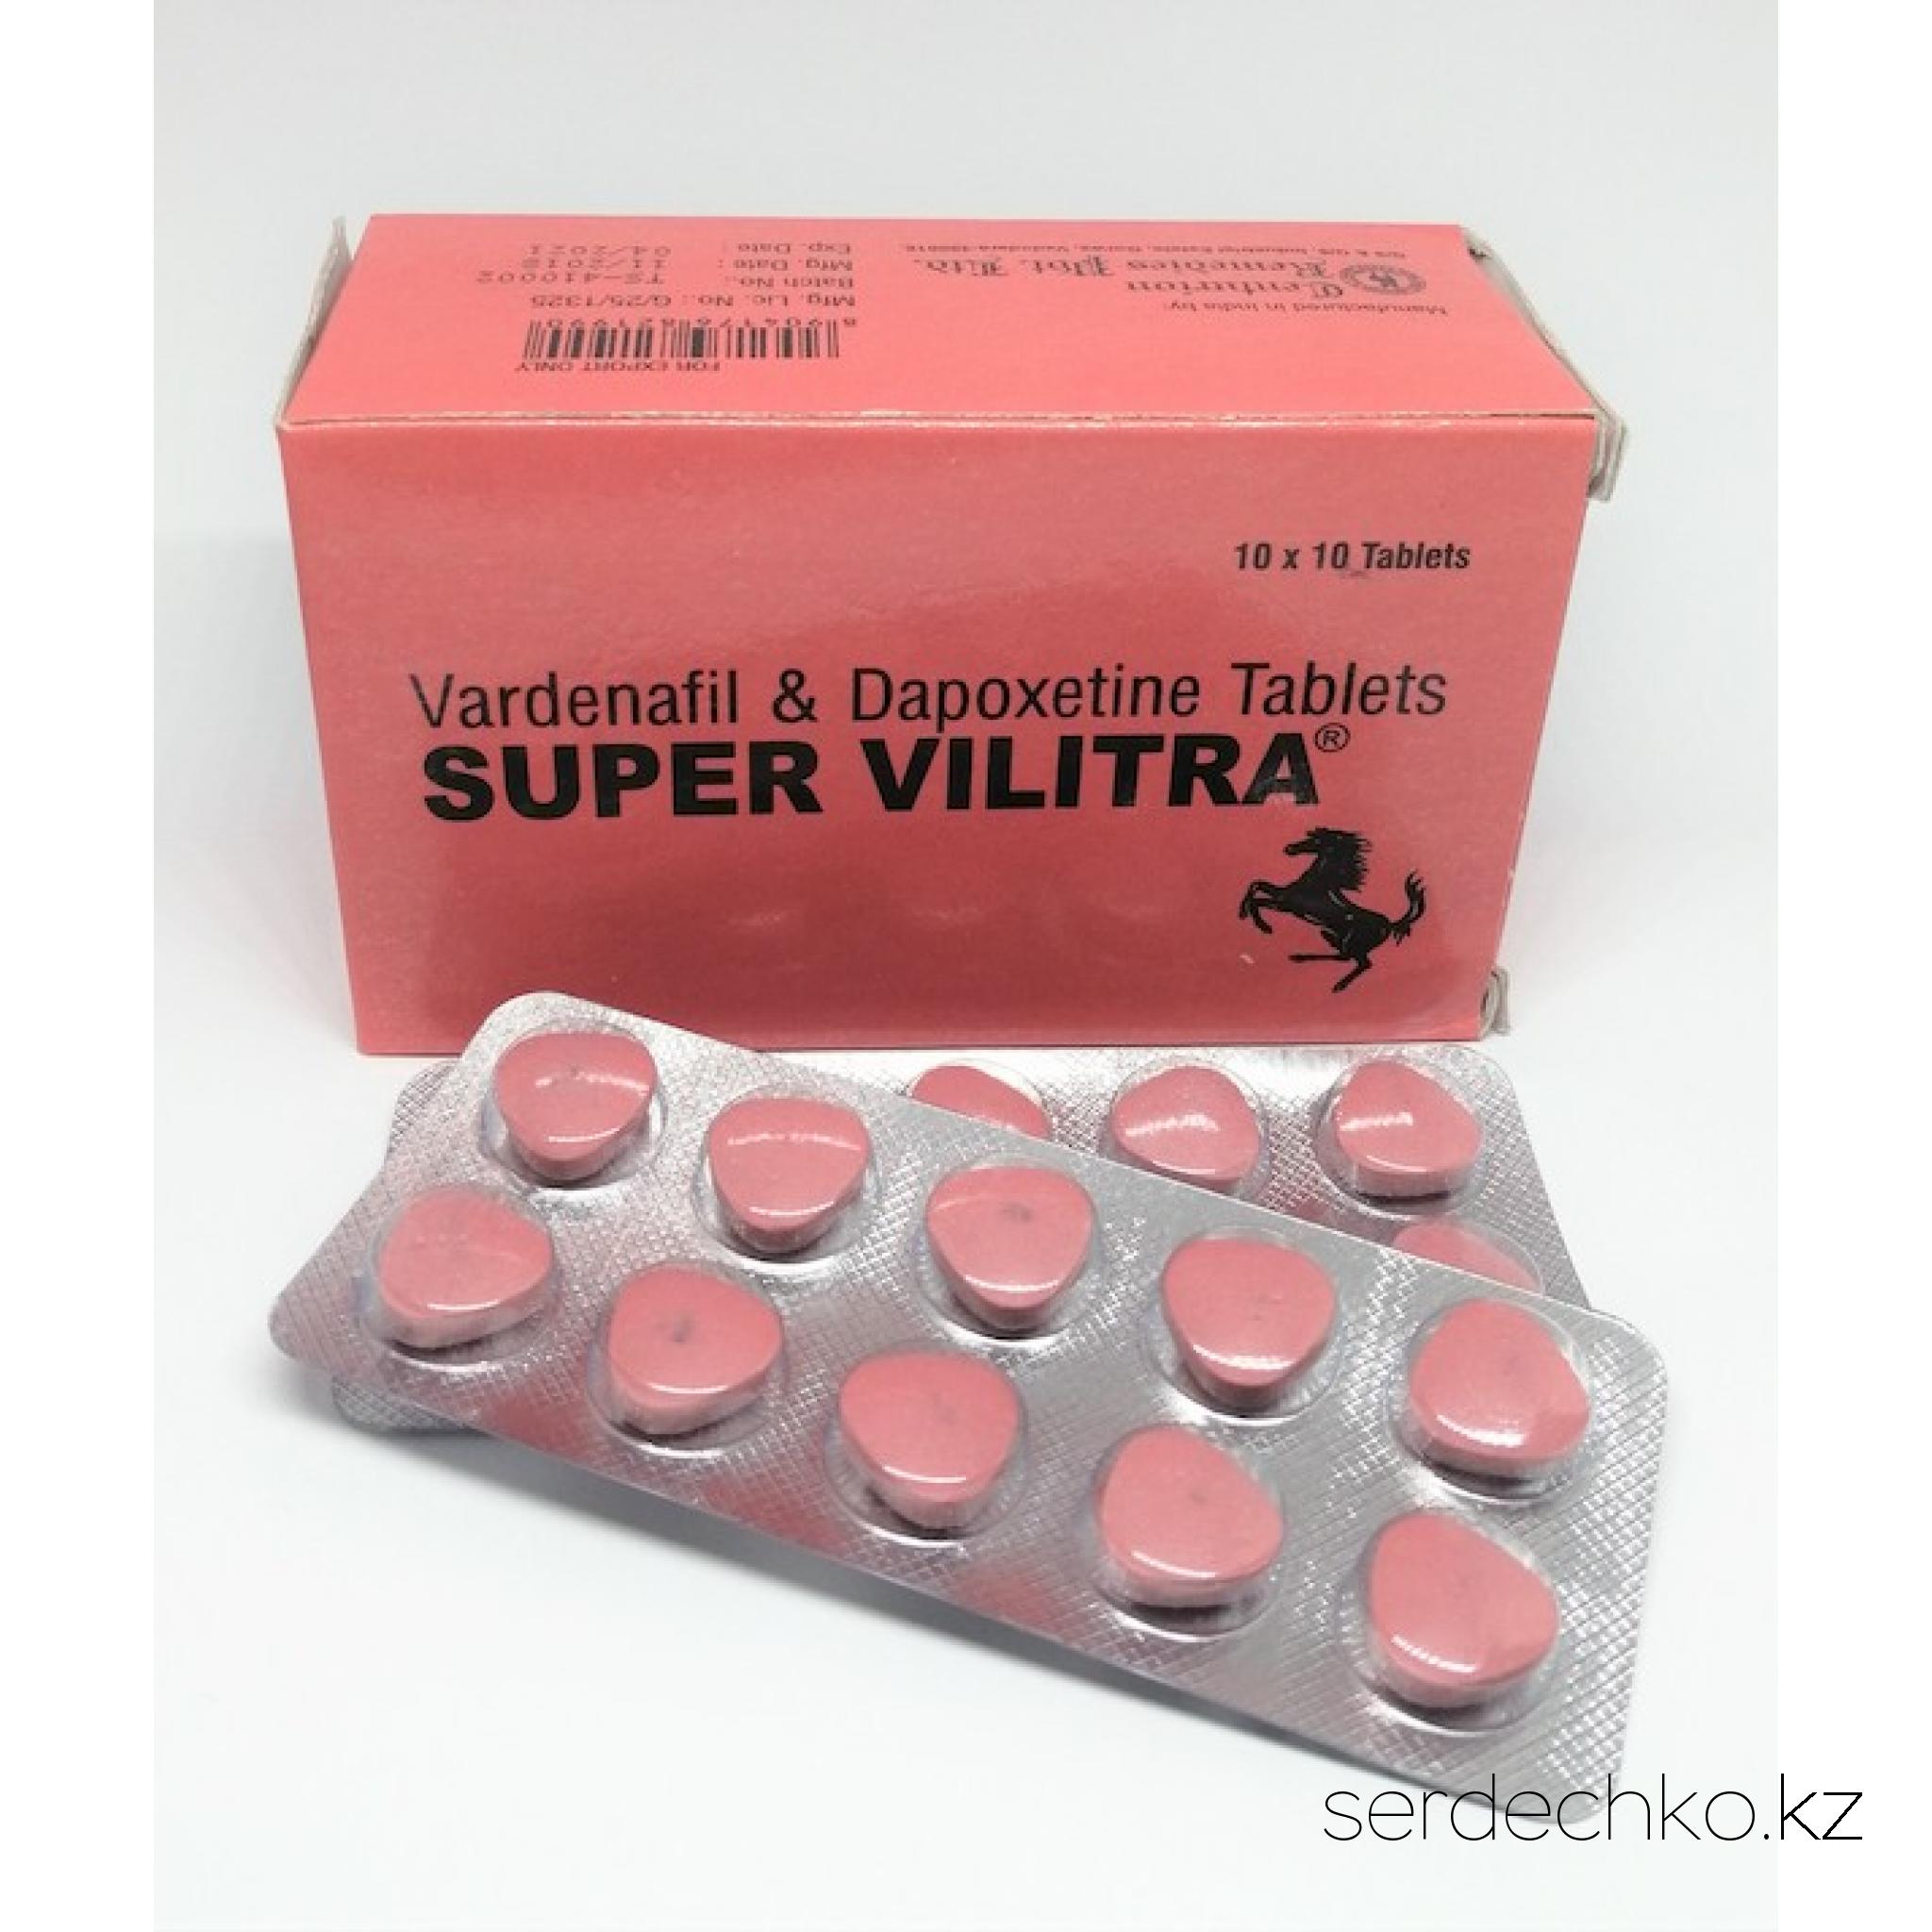 SUPER VILITRA, 
	Описание Super Vilitra

	Таблетки Super Vilitra помогают справиться с преждевременной эякуляцией и эректильной дисфункцией. В составе лекарства два действующих вещества – дапоксетин и варденафил. После приема таблеток мужчина становится выносливым в постели, секс длится дольше, при этом удовольствие получают оба партнера.

	Фармакологические свойства

	Супер Вилитра относится к группе препаратов, используемых для лечения сексуальных расстройств. В его состав входит два действующих вещества, поэтому фармакологическое действие базируется на двух механизмах. Варденафил – ингибитор ФДЭ-5, работающий за счет увеличения уровня оксида азота в организме, что способствует расслаблению гладких мышц кавернозного тела полового члена и наполнению его кровью. Именно этот эффект и необходим для возникновения стойкой эрекции при сексуальном возбуждении. Дапоксетин – селективный ингибитор обратного захвата серотонина, работающий за счет торможения захвата этого нейромедиатора нейронами и последующим усилением его действия на рецепторы.

	Форма выпуска и состав

	Super Vilitra 80 mg выпускается в форме таблеток бледно-розового цвета с закругленными краями для приема внутрь. В упаковке 10 штук. В состав каждой таблетки входит 20 мг варденафила и 60 мг дапоксетина.

	Преимущества препарата Супер Вилитра

	Средство для улучшения потенции и выносливости в постели Super Vilitra купить стоит сразу по нескольким причинам:

	
		таблетки действуют с первой дозы, поэтому не нужно проходить длительный курс лечения;
	
		кратность приема составляет всего 1 таблетка в сутки, а действовать она продолжает до 12 часов;
	
		цена дженерика Супер Вилитра доступная, поэтому решения проблемы с эрекцией и преждевременным семяизвержением будет экономным.


	Показания к применению таблеток

	Чтобы получить желаемый эффект от применения лекарственного средства, важно использовать его строго по показаниям. Таблетки предназначены для лечения проблем с потенцией и преждевременной эякуляцией. Могут использоваться мужчинами от 18 до 65 лет, страдающими от подобных расстройств.

	Инструкция по использованию

	Обеспечить безопасность и желаемый результат при приеме средства способно строгое соблюдение рекомендаций врача или информации, которая указывается на Супер Вилитра инструкции.

	Применяя препарат для улучшения потенции и увеличения длительности полового акта, необходимо учесть несколько правил:

	
		использовать лекарство за 40-60 минут до полового акта, чтобы действующие вещества в организме начали работать;
	
		начинать с минимальной дозировки, увеличивая ее постепенно при недостаточном эффекте;
	
		не превышать кратность приема – 1 раз в сутки;
	
		запивать средство водой или другими напитками, не используя вместе с Супер Вилитра алкоголь.


	Способ применения и дозировка Super Vilitra

	 

	Super Vilitra предназначена для приема внутрь. Один раз в сутки можно применять ½-1 таблетки, в зависимости от особенностей организма. Максимальная суточная доза средства составляет 80 мг.
